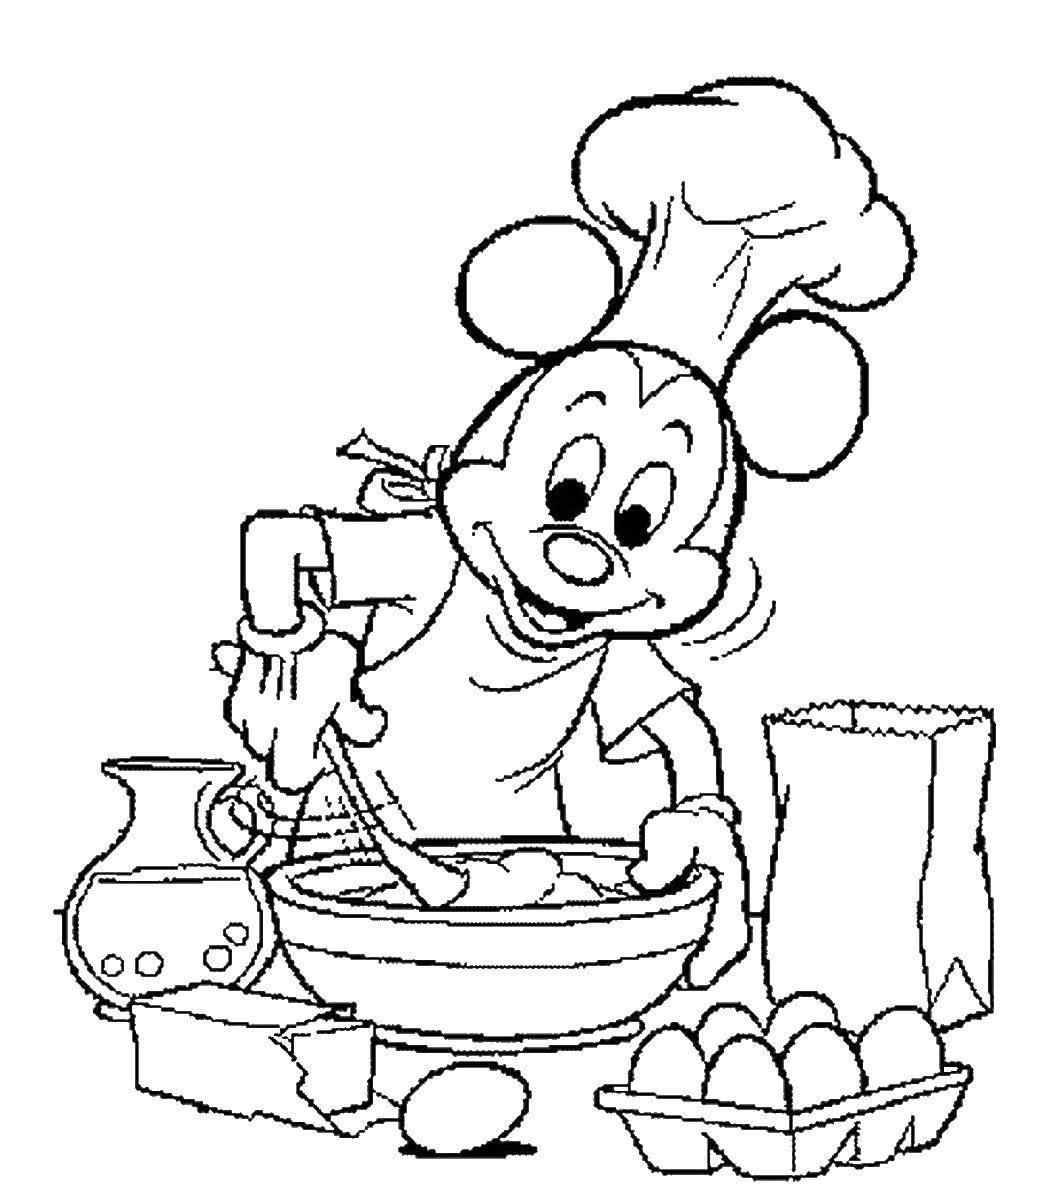 Опис: розмальовки  Міккі маус готує їжу. Категорія: Готуємо їжу. Теги:  їжа, кухар, Міккі маус.